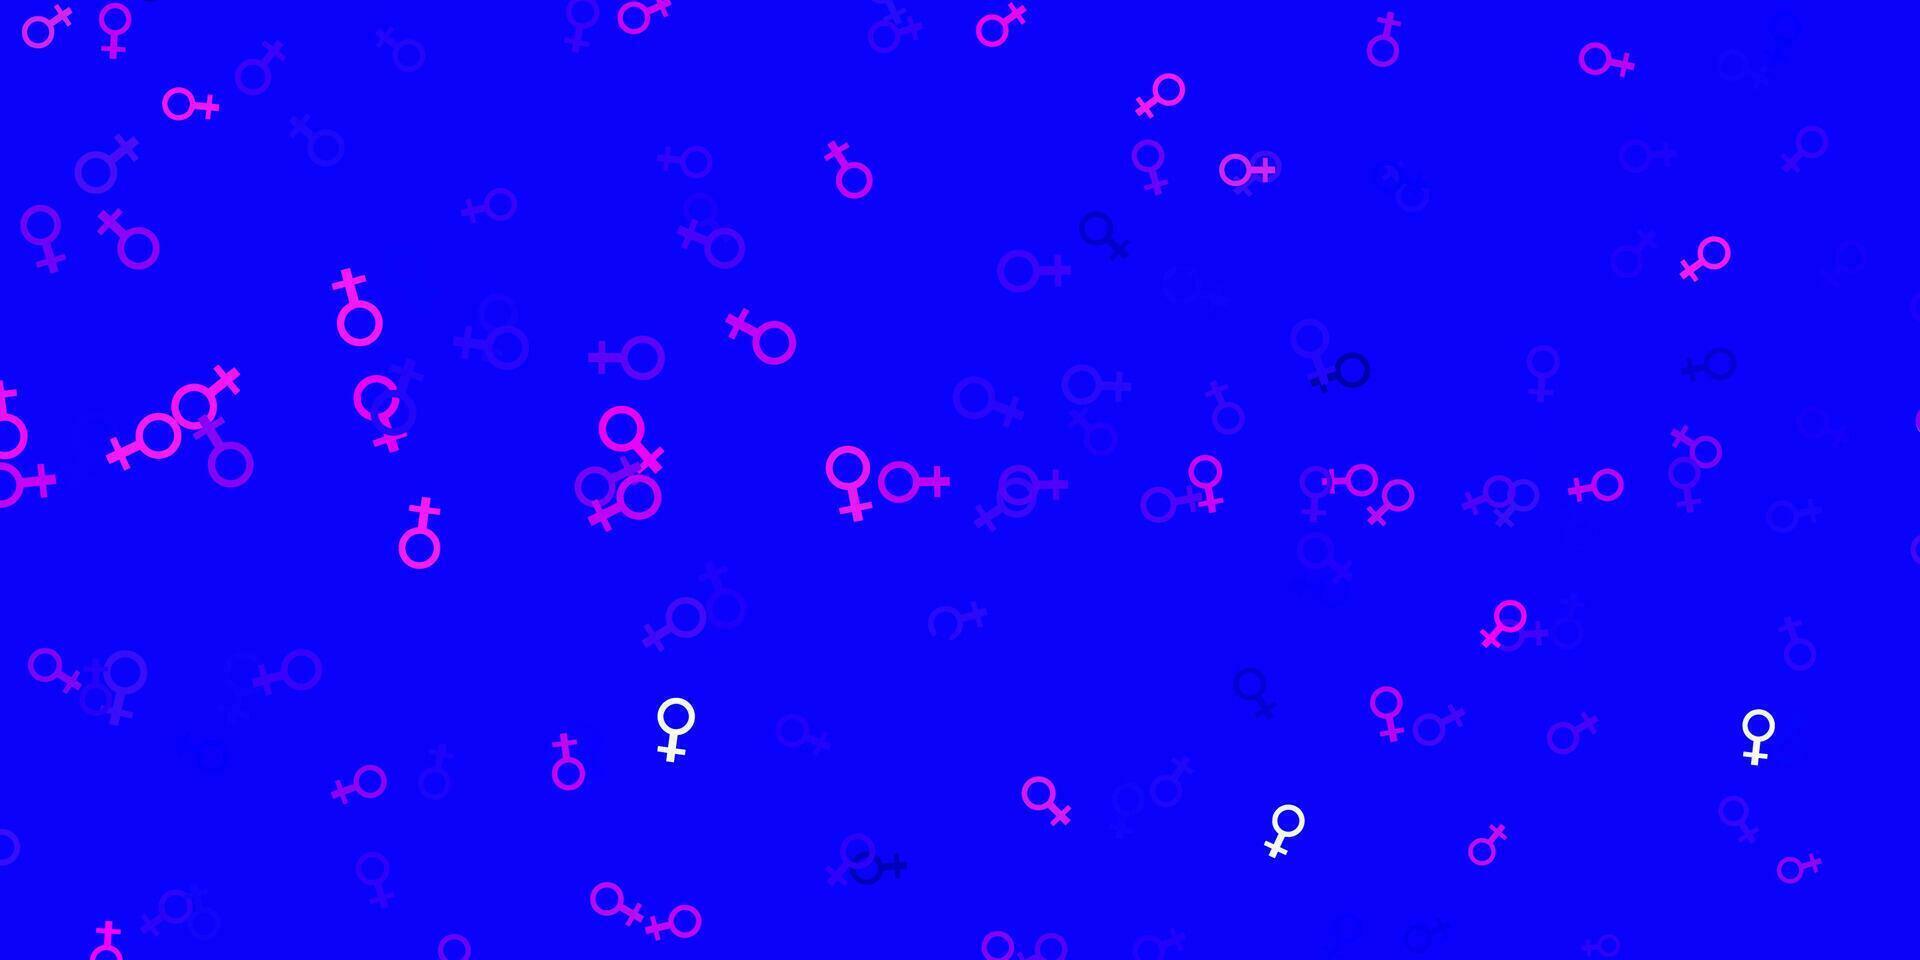 ljusrosa, blå vektorbakgrund med kvinnans kraftsymboler. vektor